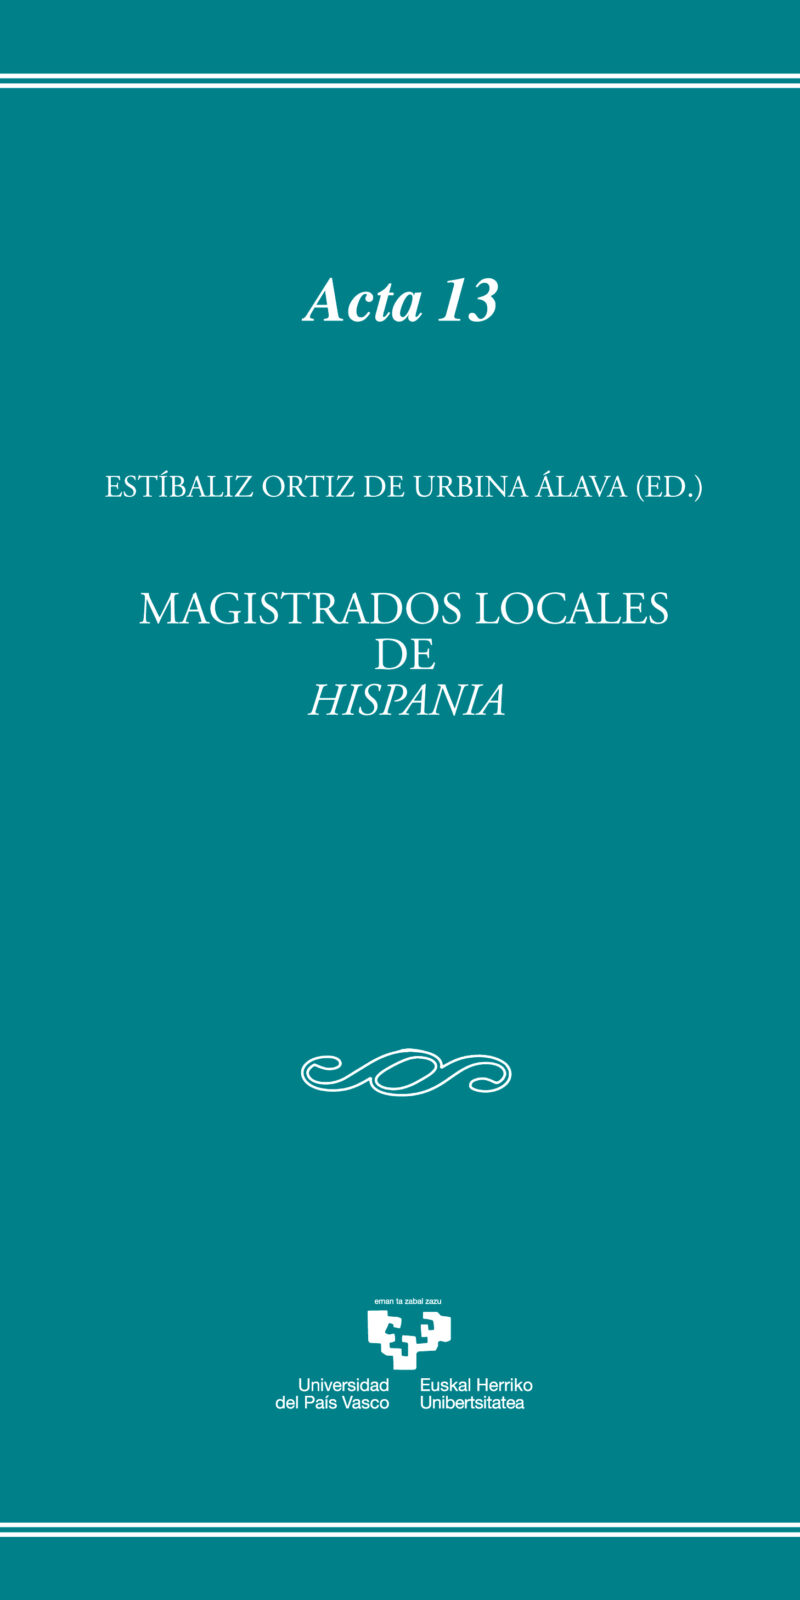 Magistrados locales de Hispania